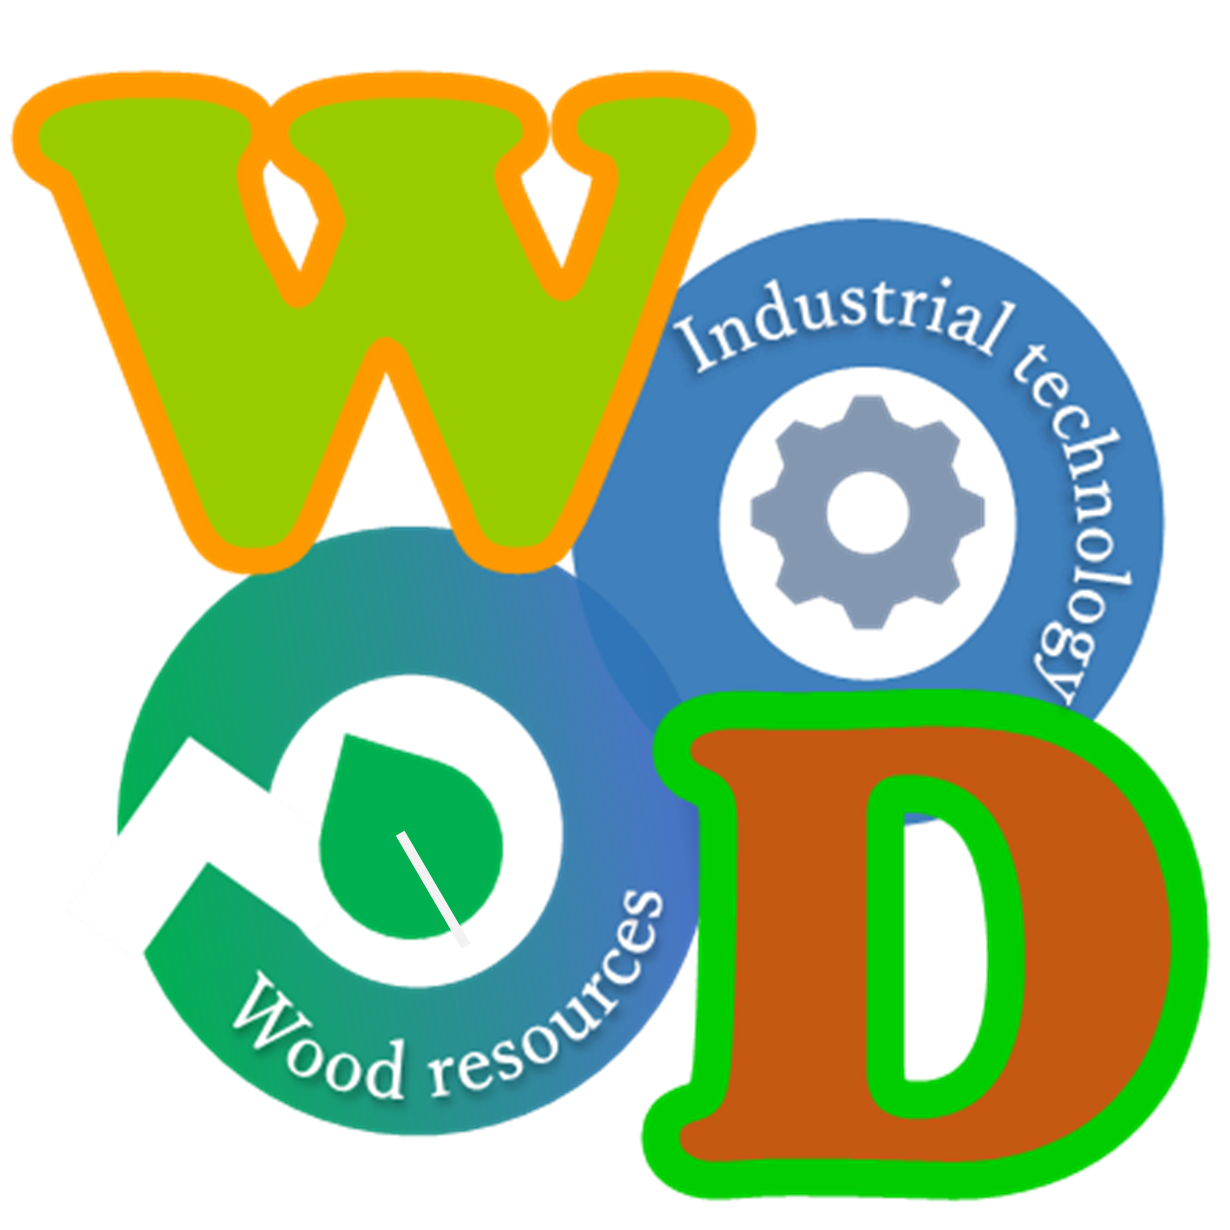 持続性木質資源工業技術研究会